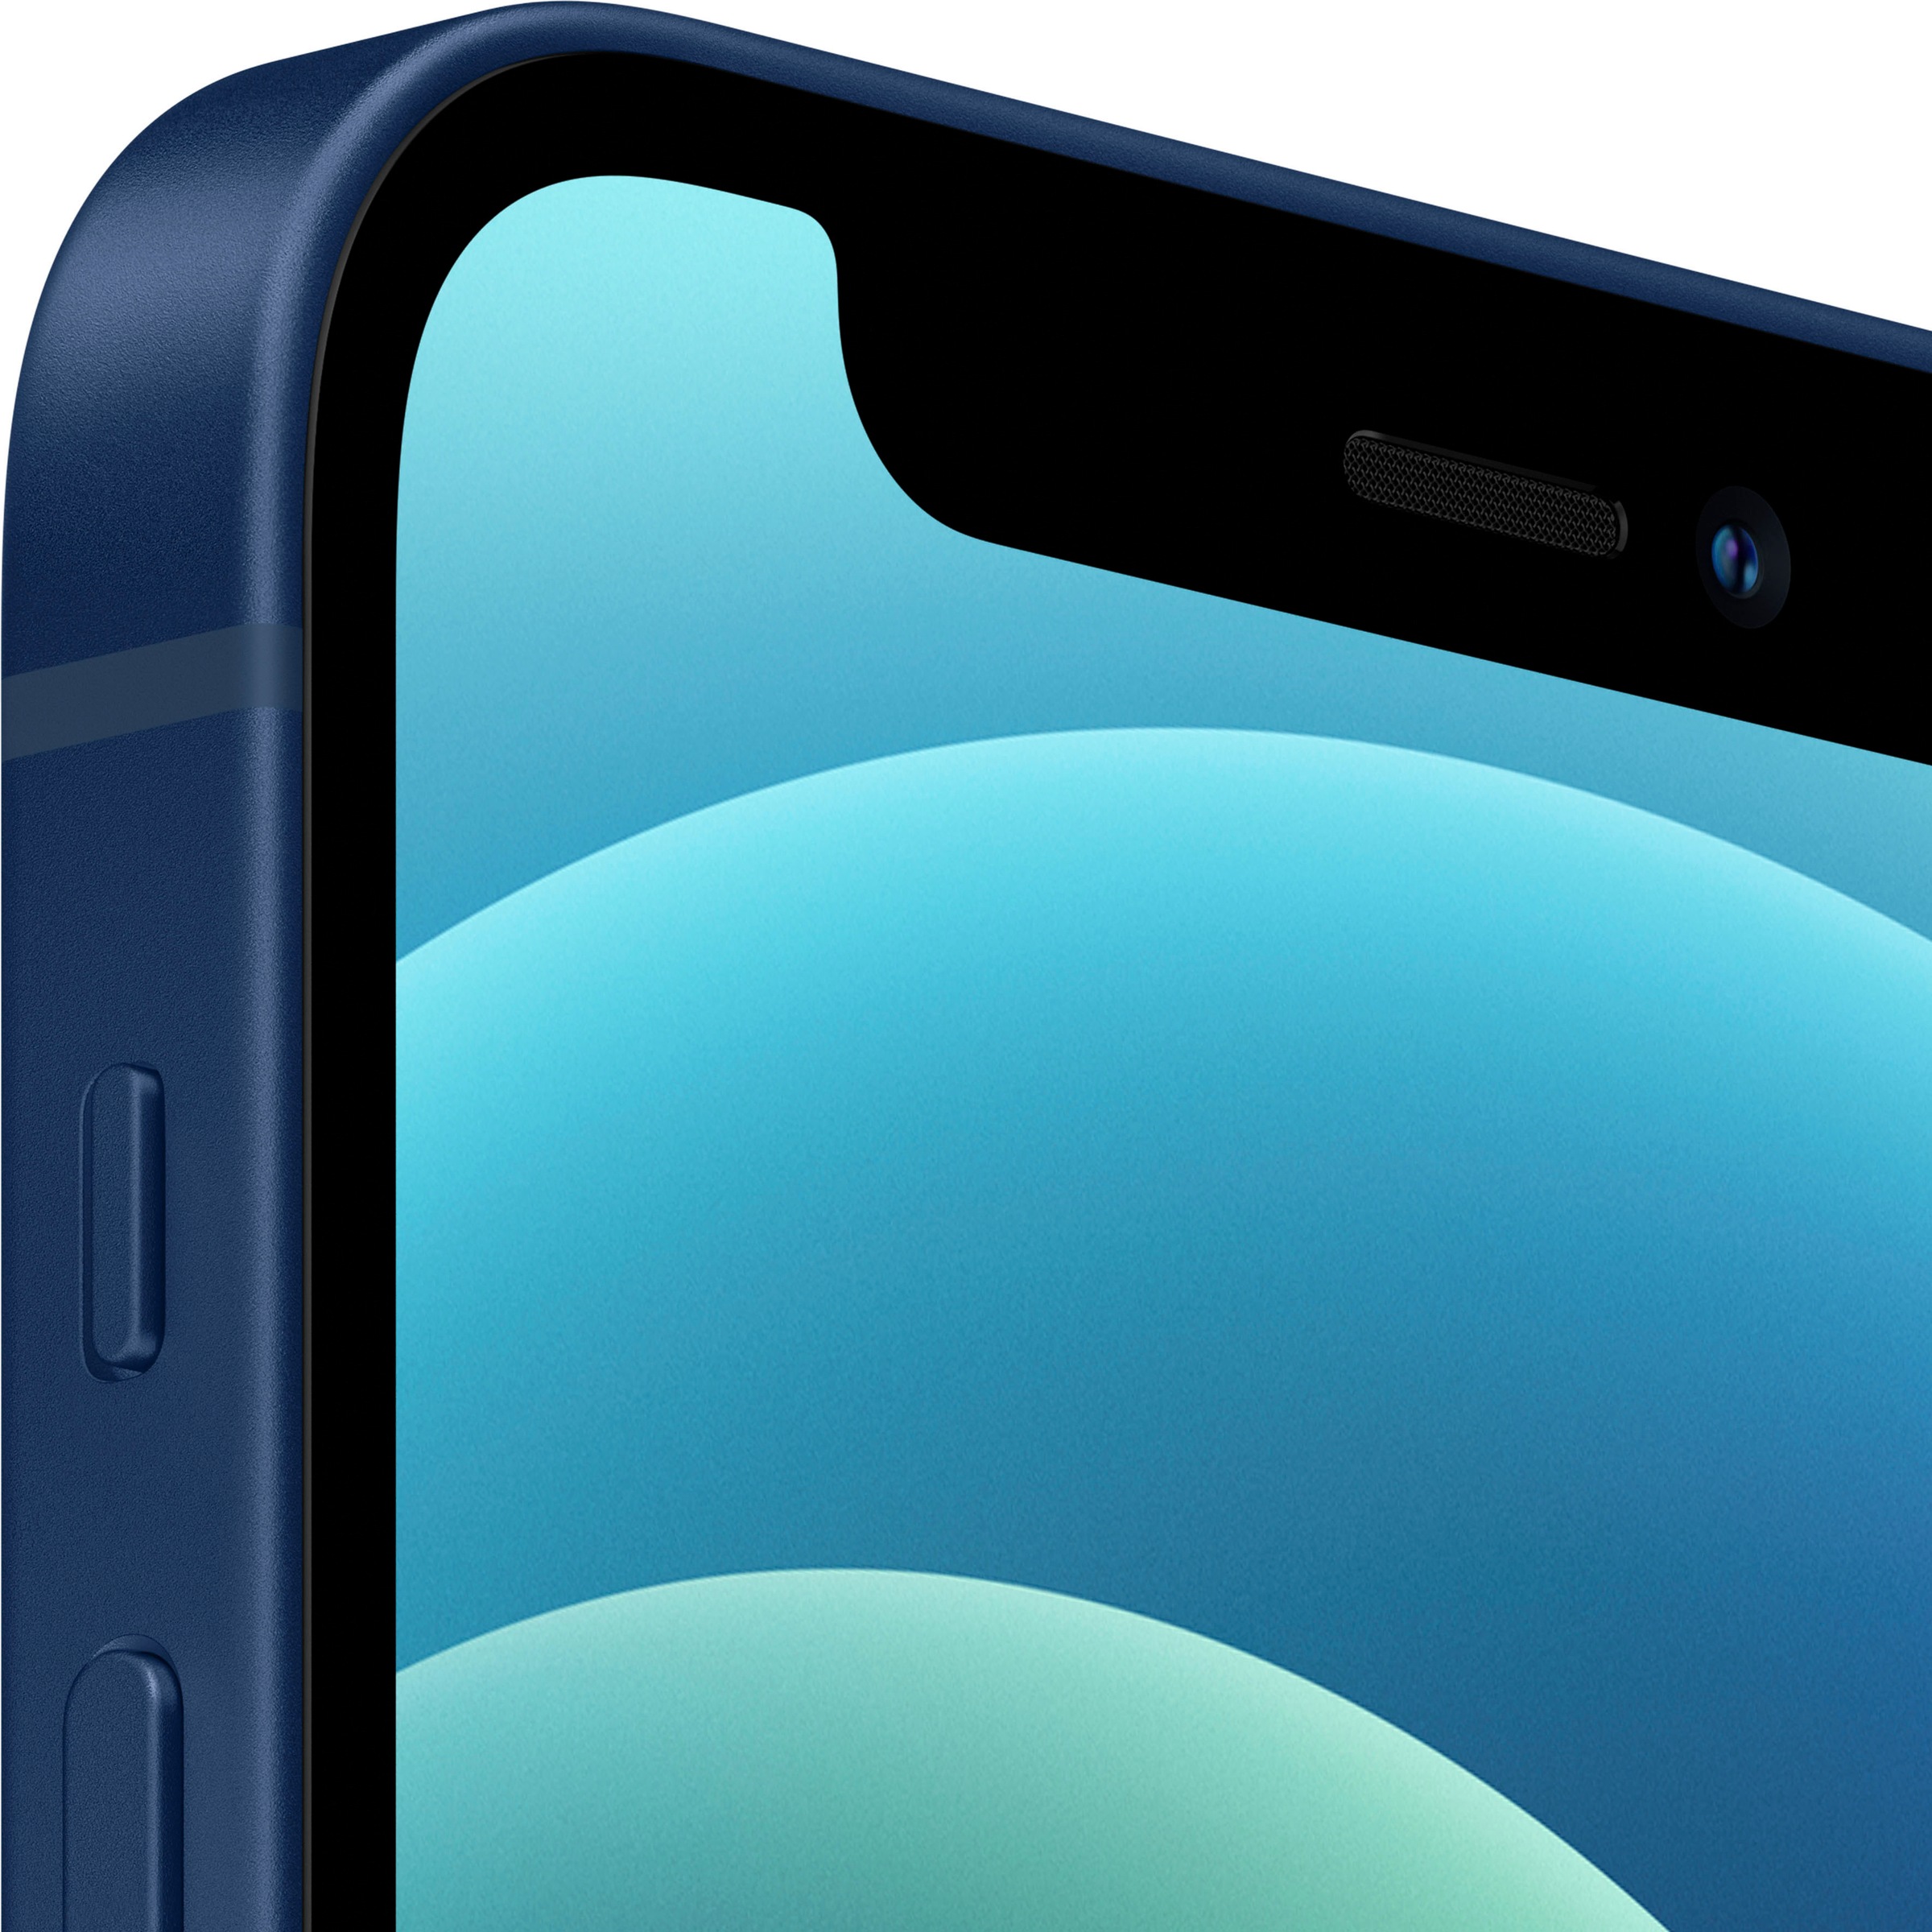 Apple Smartphone »iPhone 12 mini«, Blau, 13,7 cm/5,4 Zoll, 128 GB Speicherplatz, 12 MP Kamera, ohne Strom Adapter und Kopfhörer, kompatibel mit AirPods, Earpods